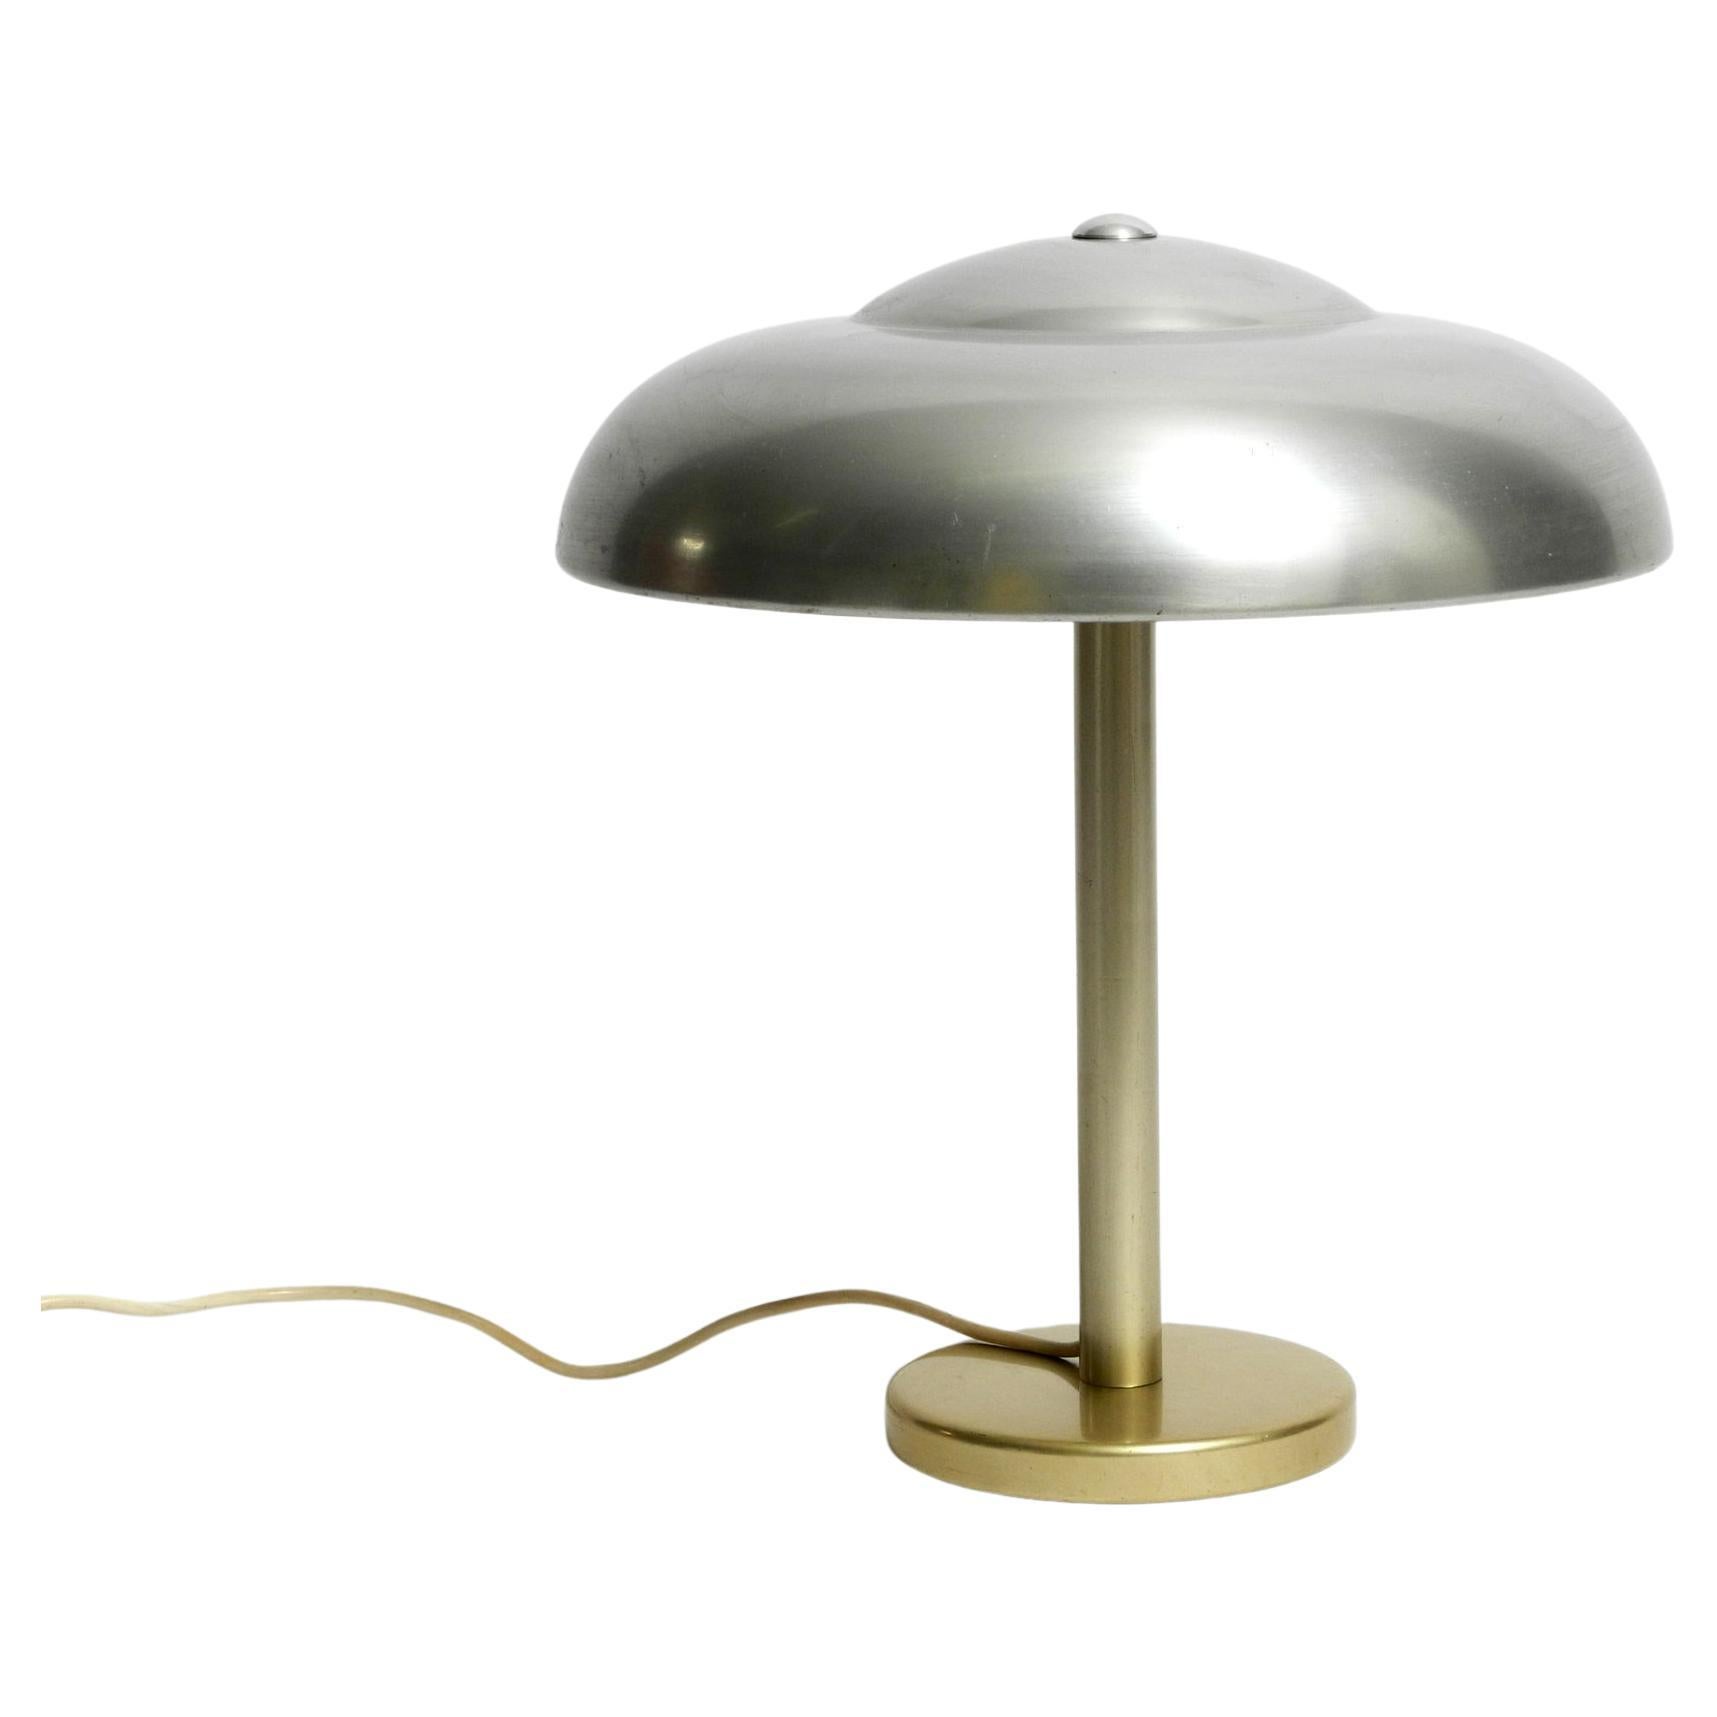 Belle, très rare, grande lampe de table WMF Ikora des années 1930. Fabriqué en Allemagne